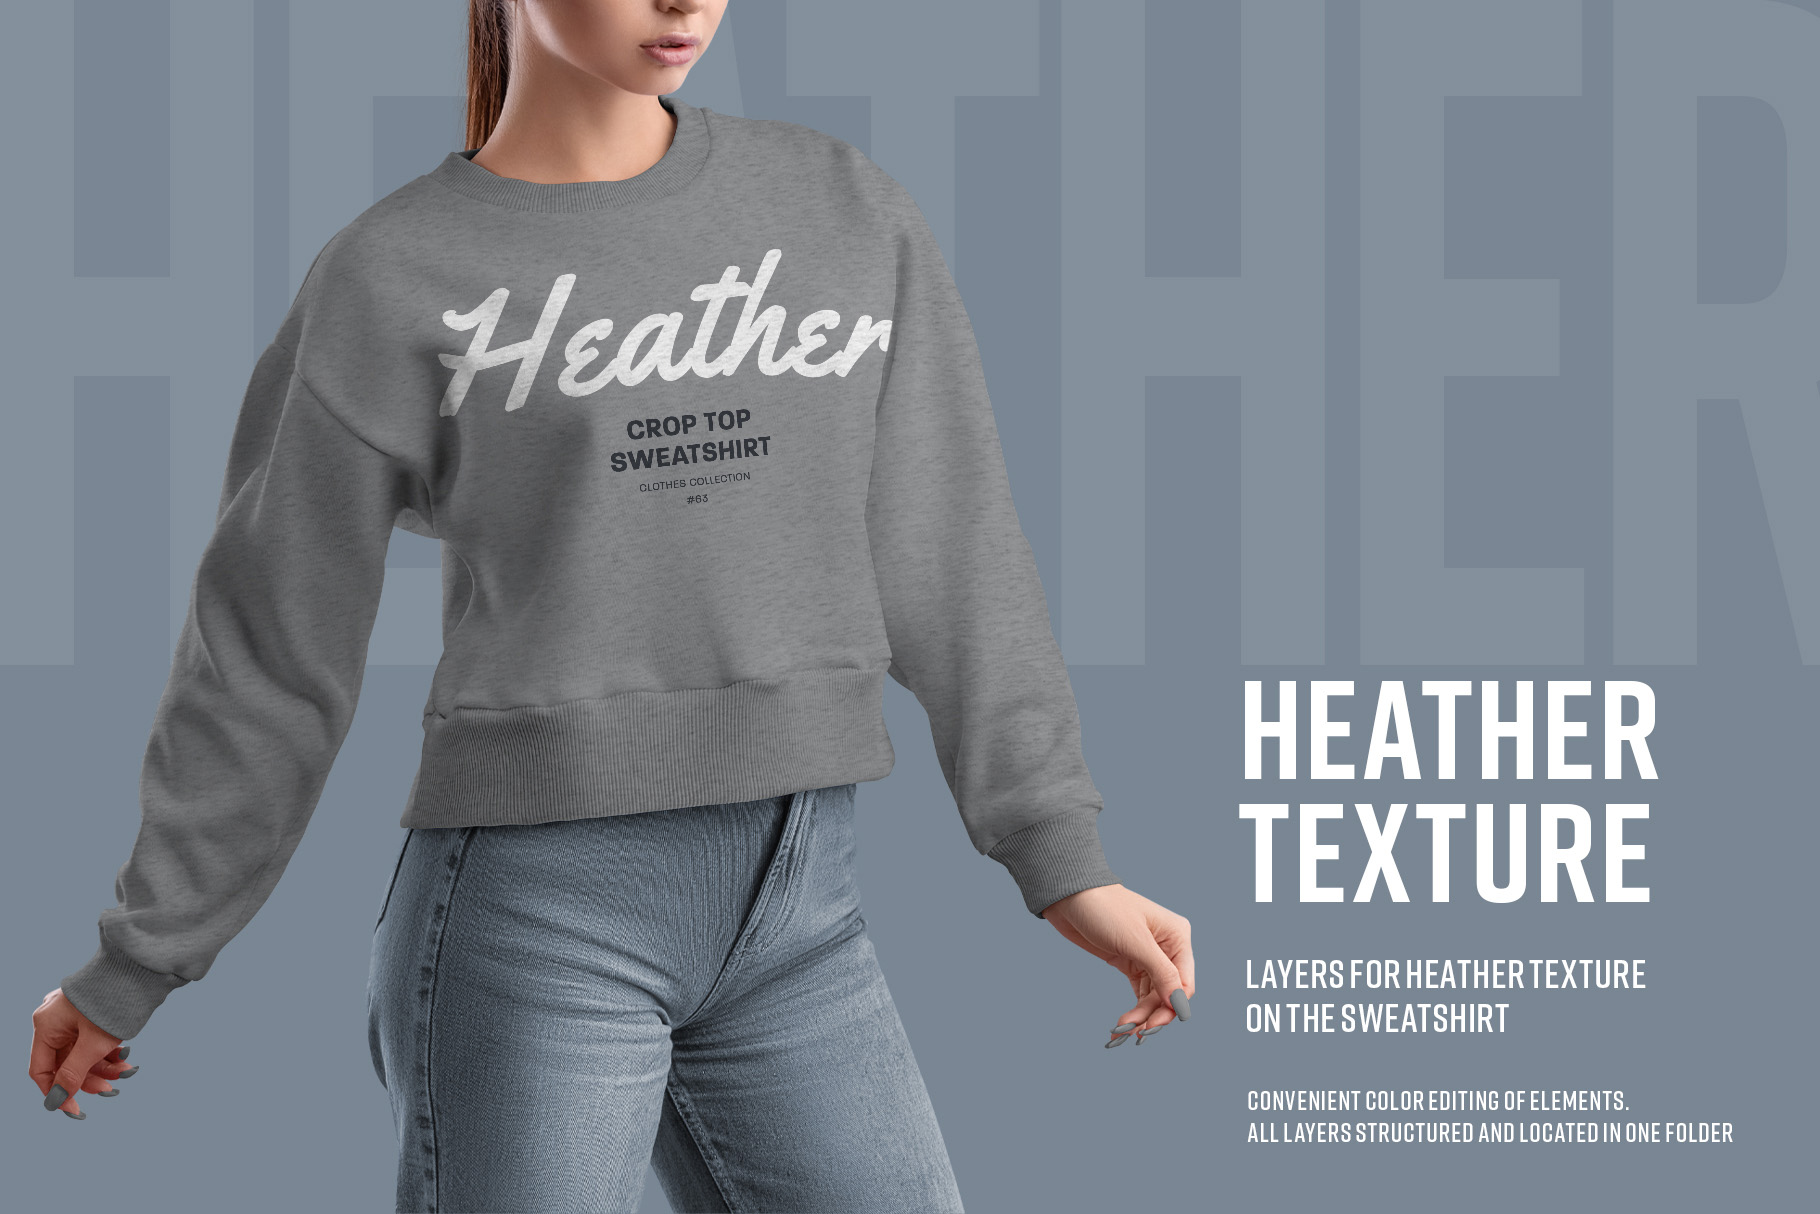 9 Mockups Woman Crop Top Sweatshirt heather texture.